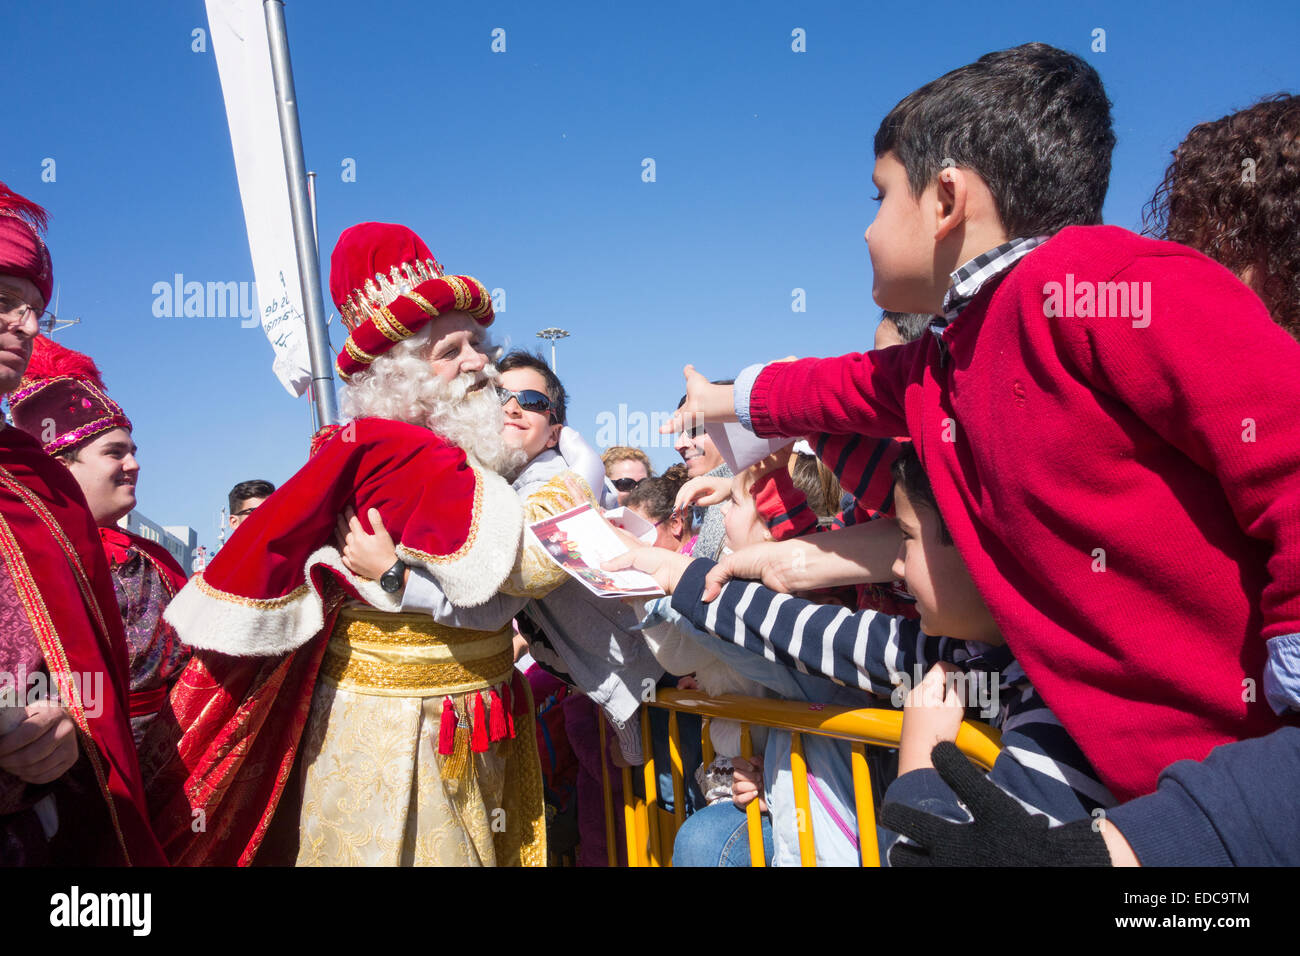 Los Reyes Magos (die Heiligen drei Könige oder drei Könige) Parade in Spanien Stockfoto